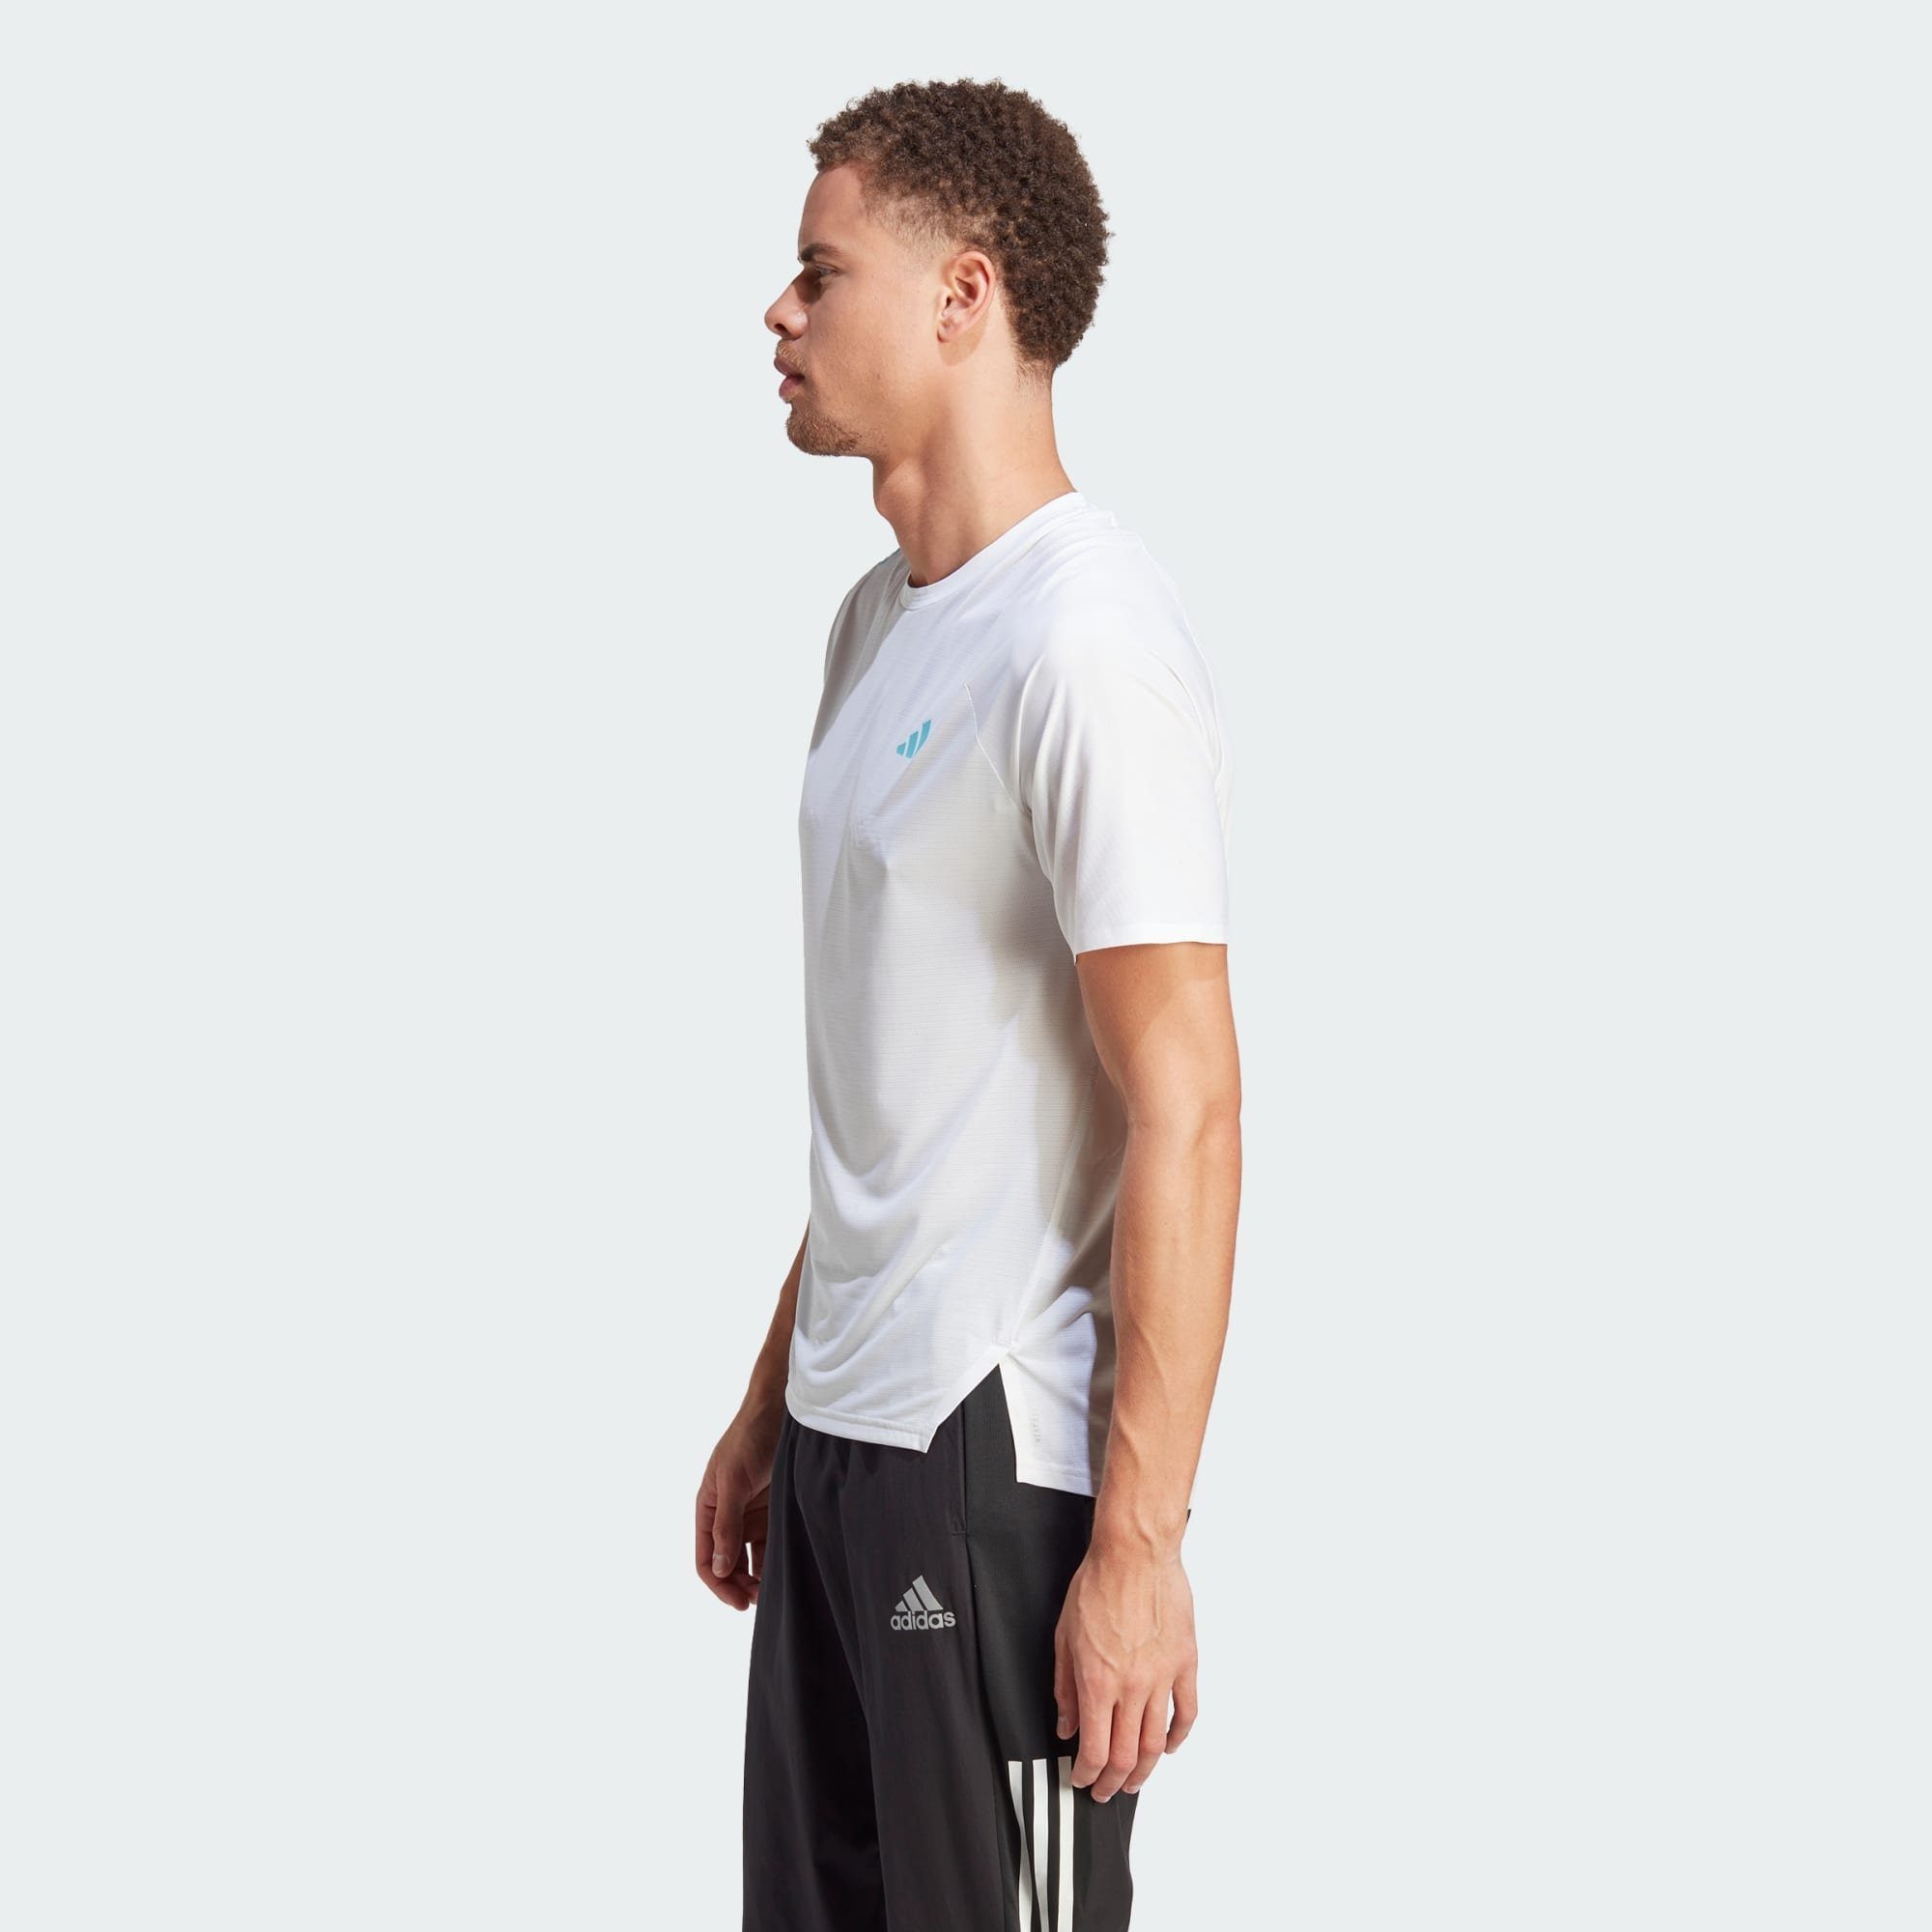 RUNNING White T-SHIRT ADIZERO Performance adidas Laufshirt